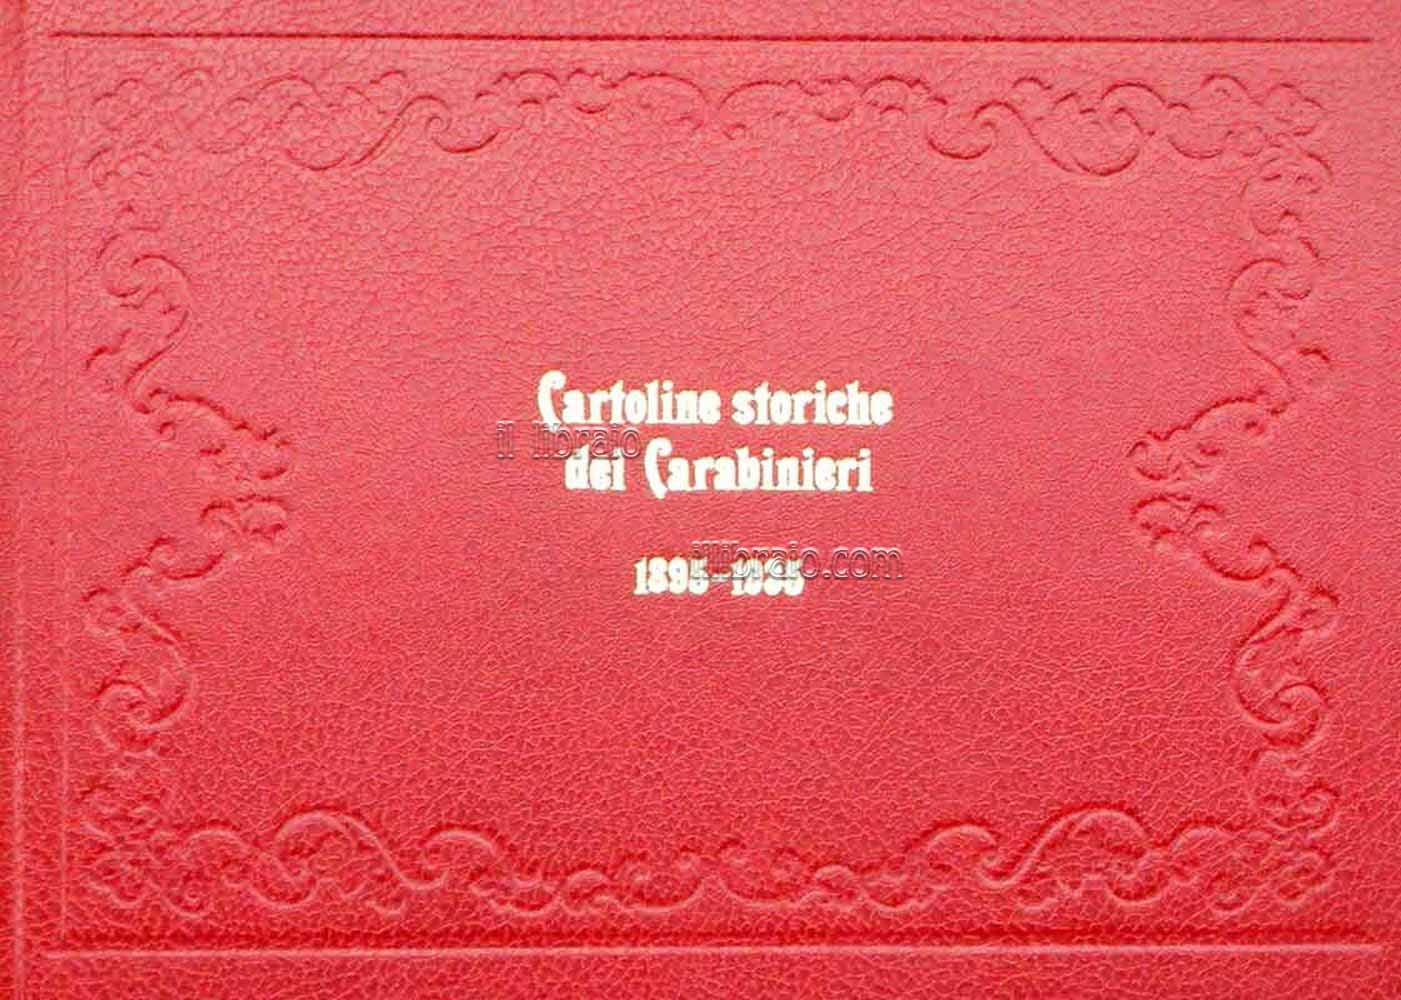 Cartoline storiche dei Carabinieri 1895 - 1935